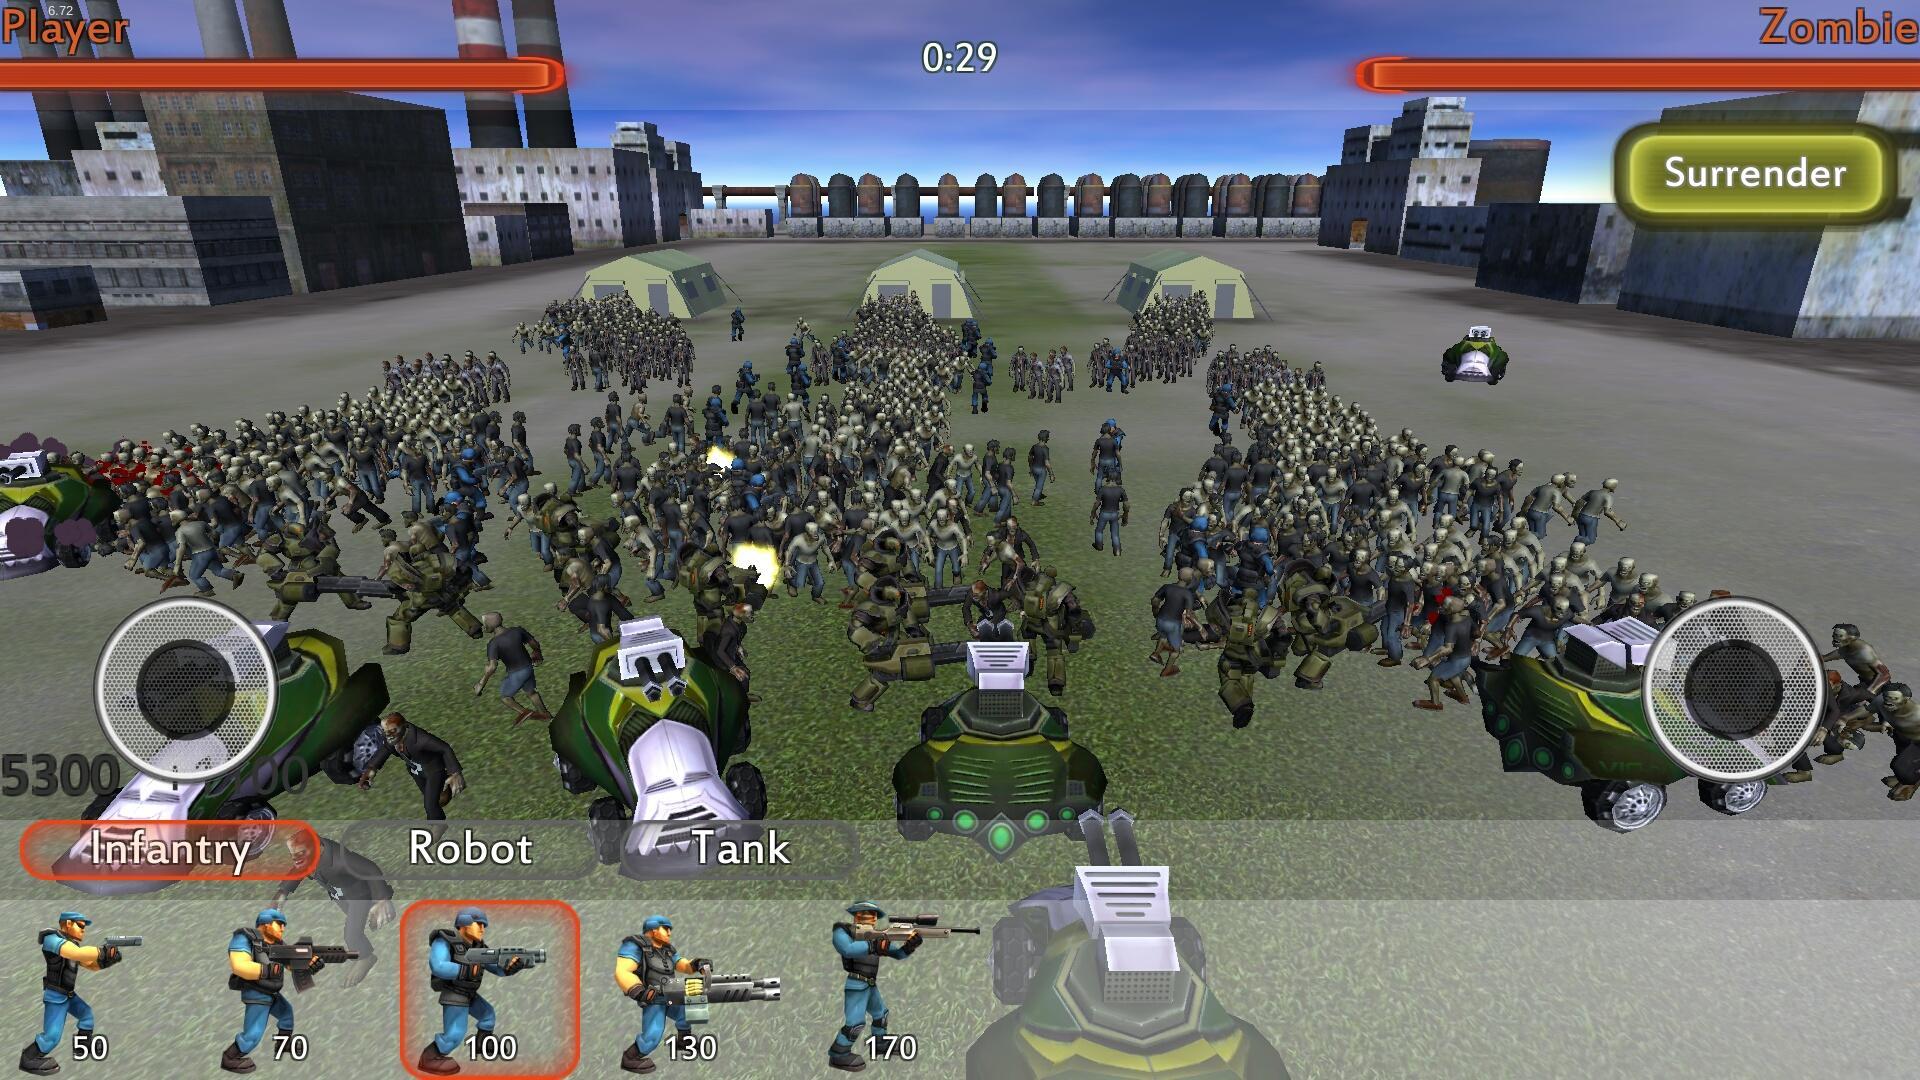 Screenshot 1 of សង្គ្រាម Zombie ស្លាប់ពិភពលោក 2 